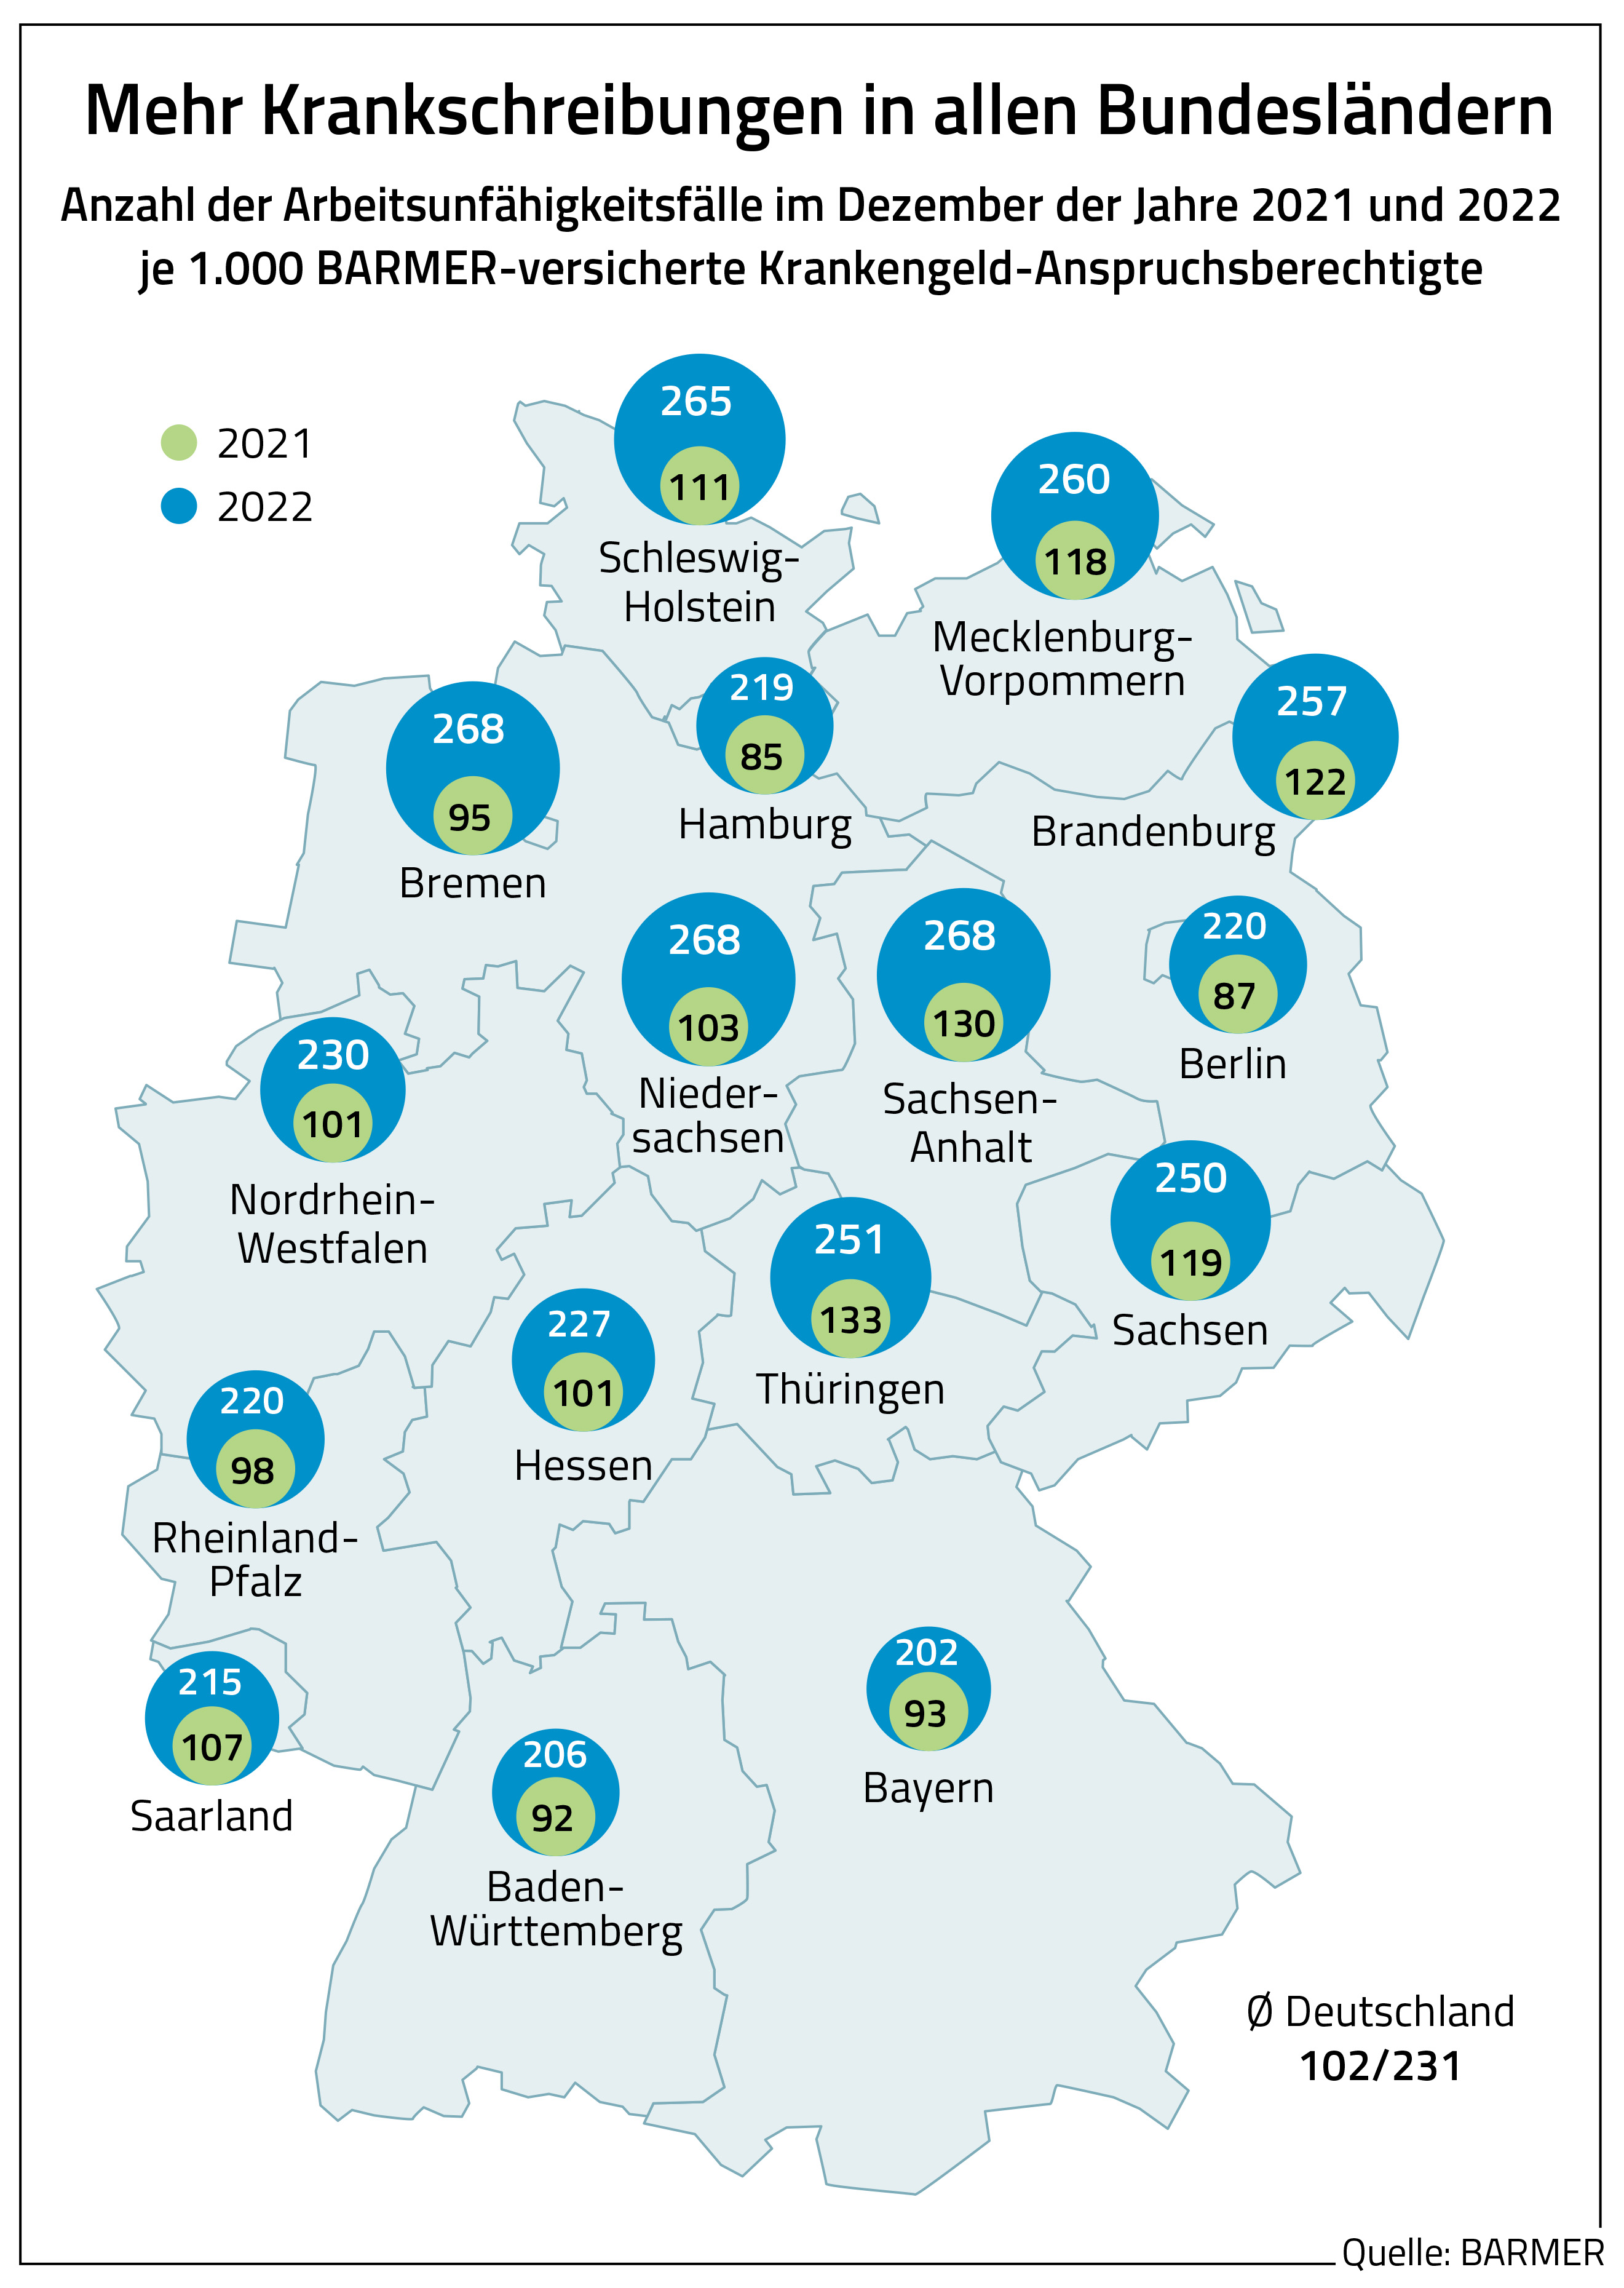 Eine Deutschlandkarte, die die Arbeitsunfähigkeiten je 1.000 Krankengeld-Anspruchsberechtigte für die Jahre 2021 und 2022 zeigt